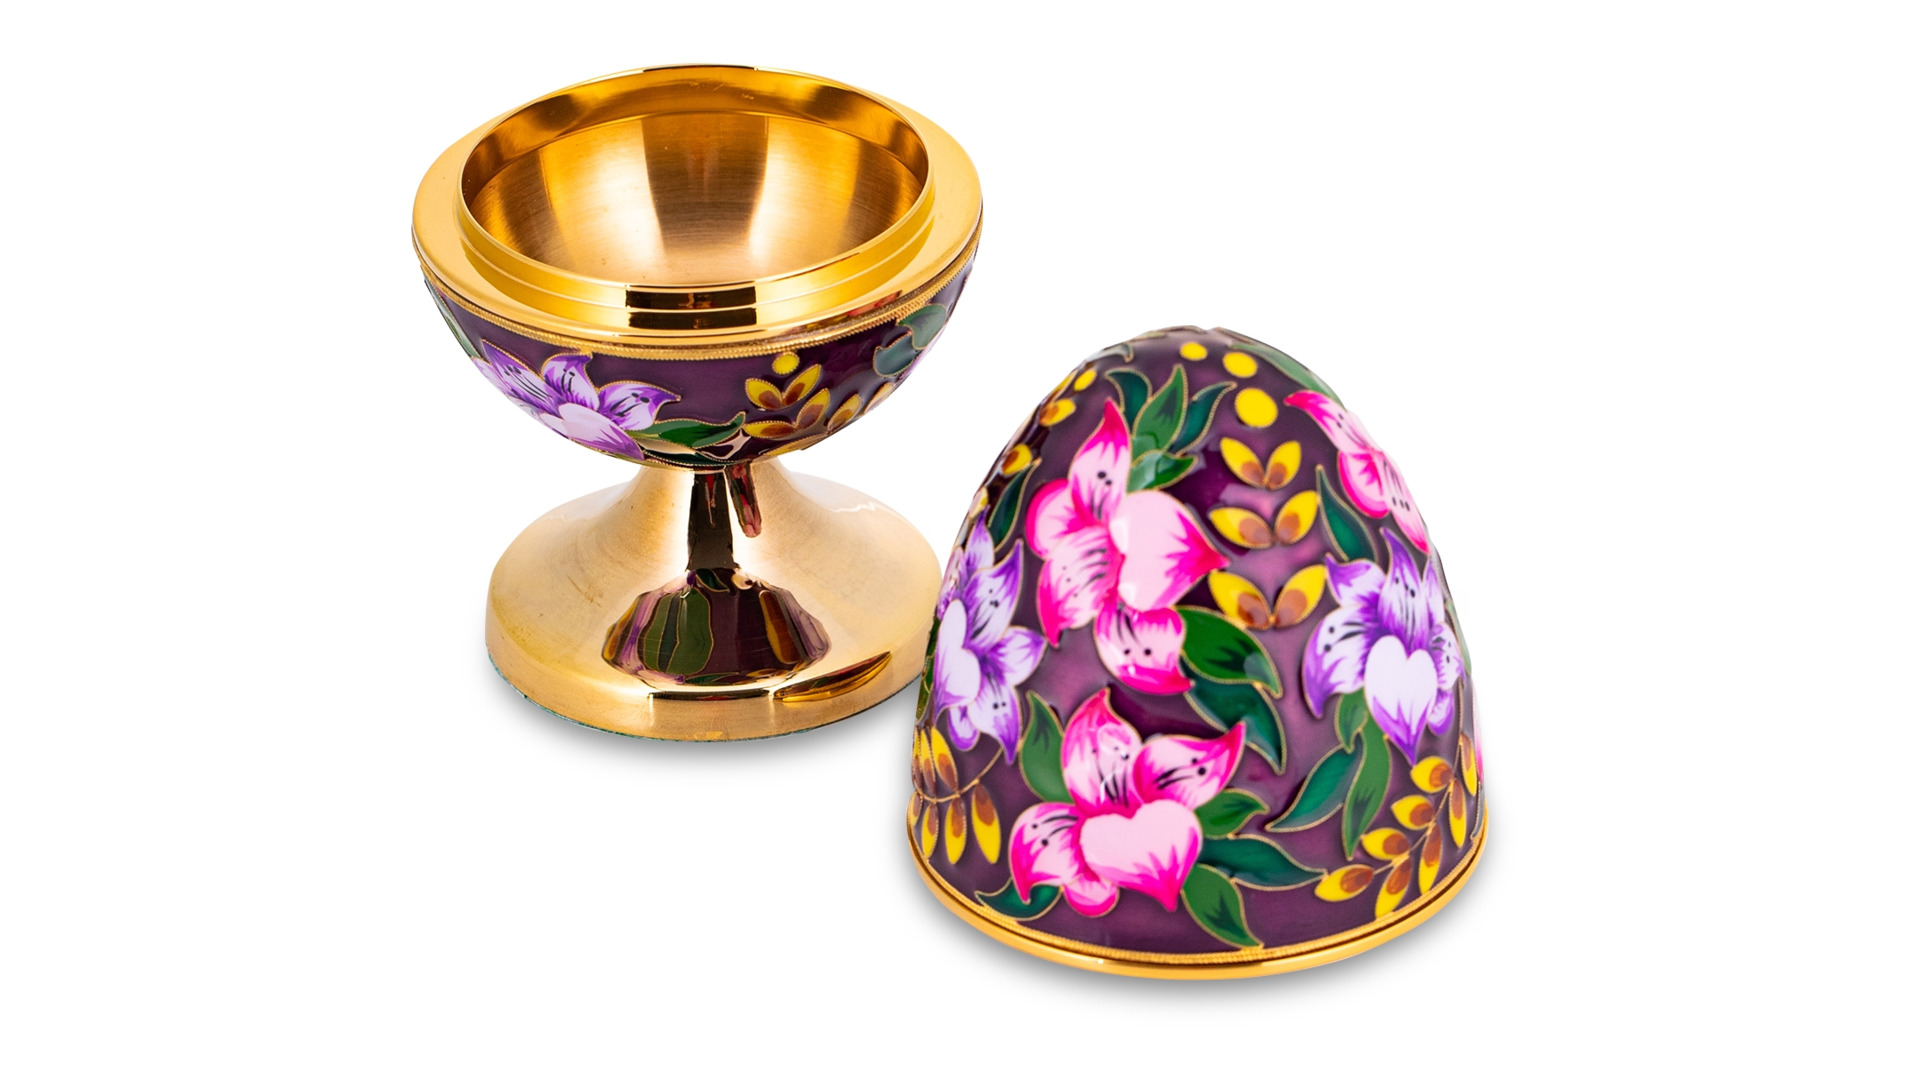 Шкатулка яйцо Русские самоцветы Лилия 212,38 г, медь